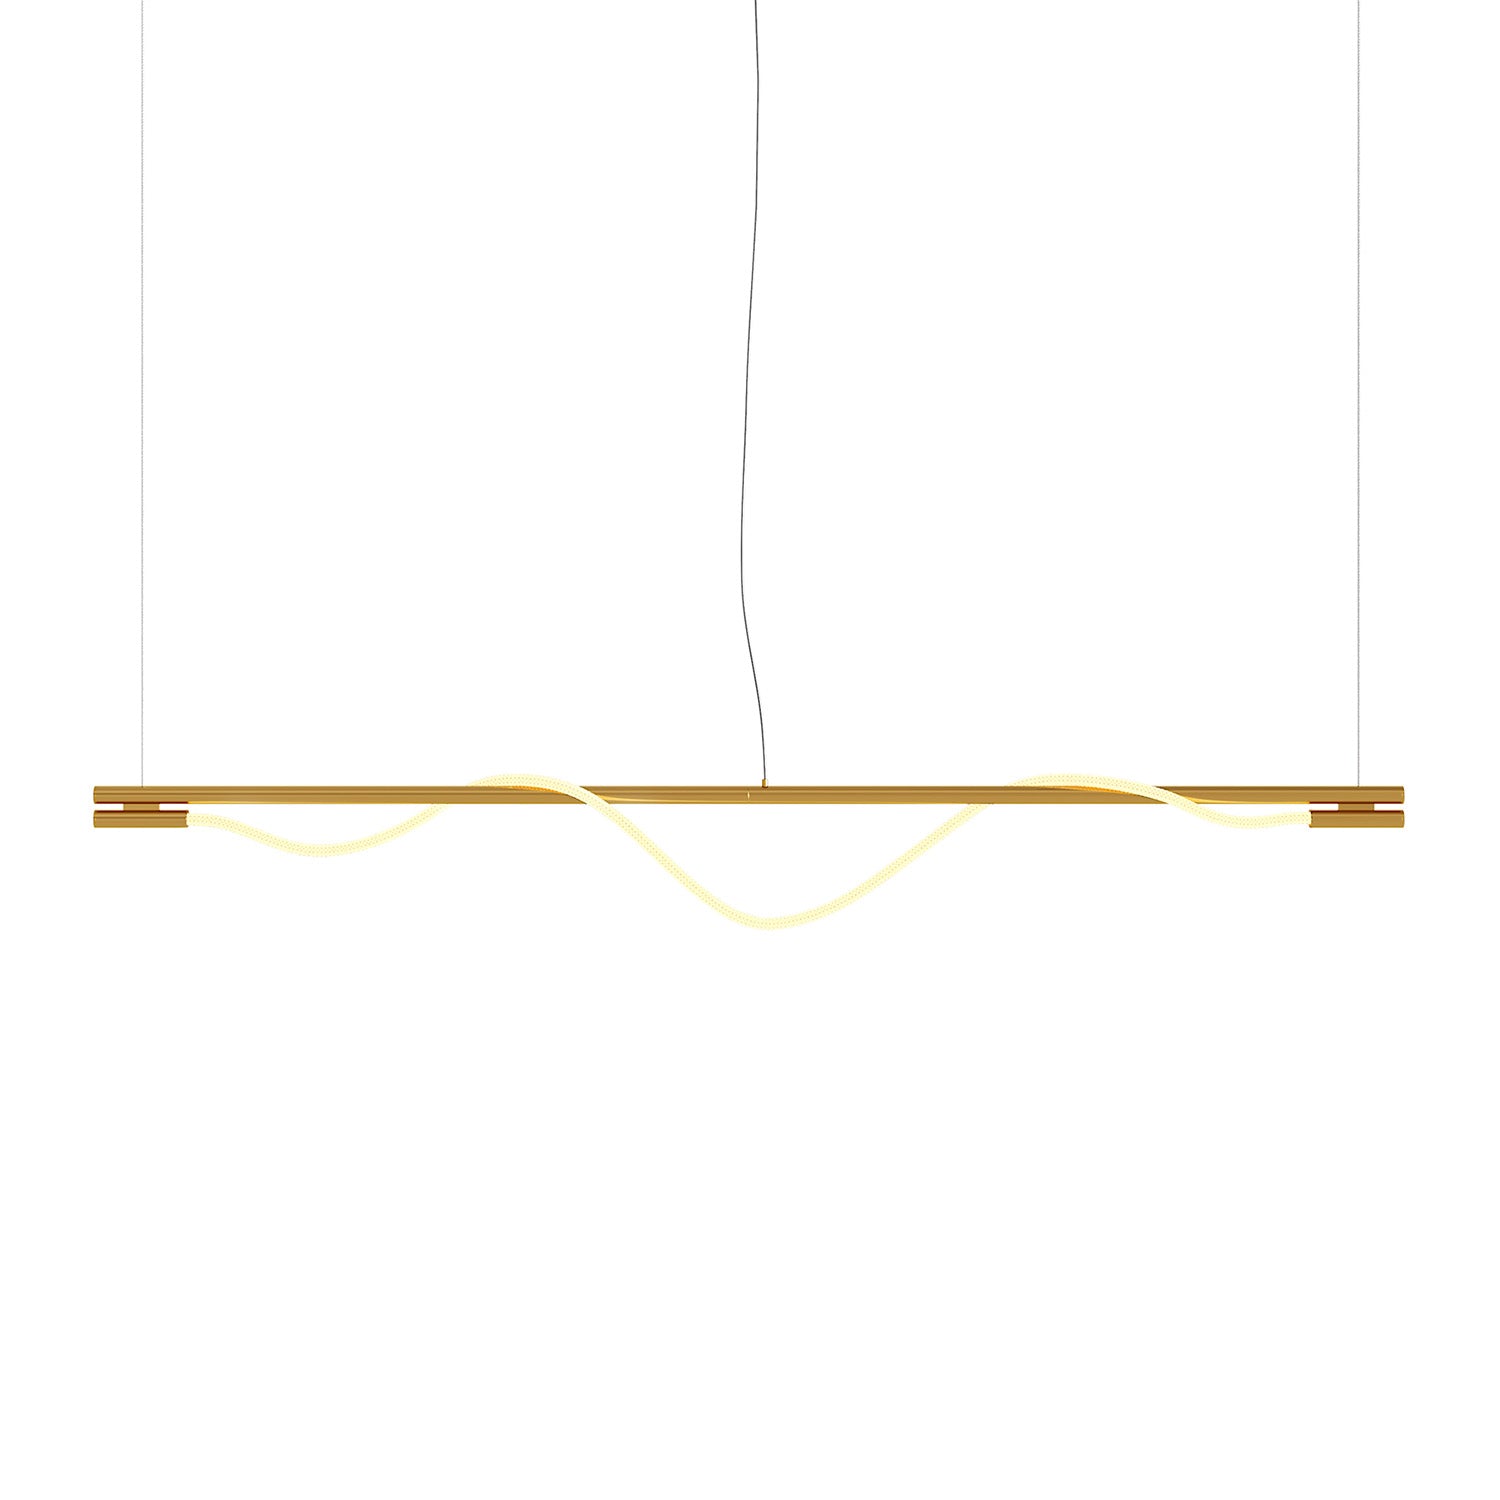 TAU – Integrierte flexible LED-Röhrenaufhängung, Gold und Design